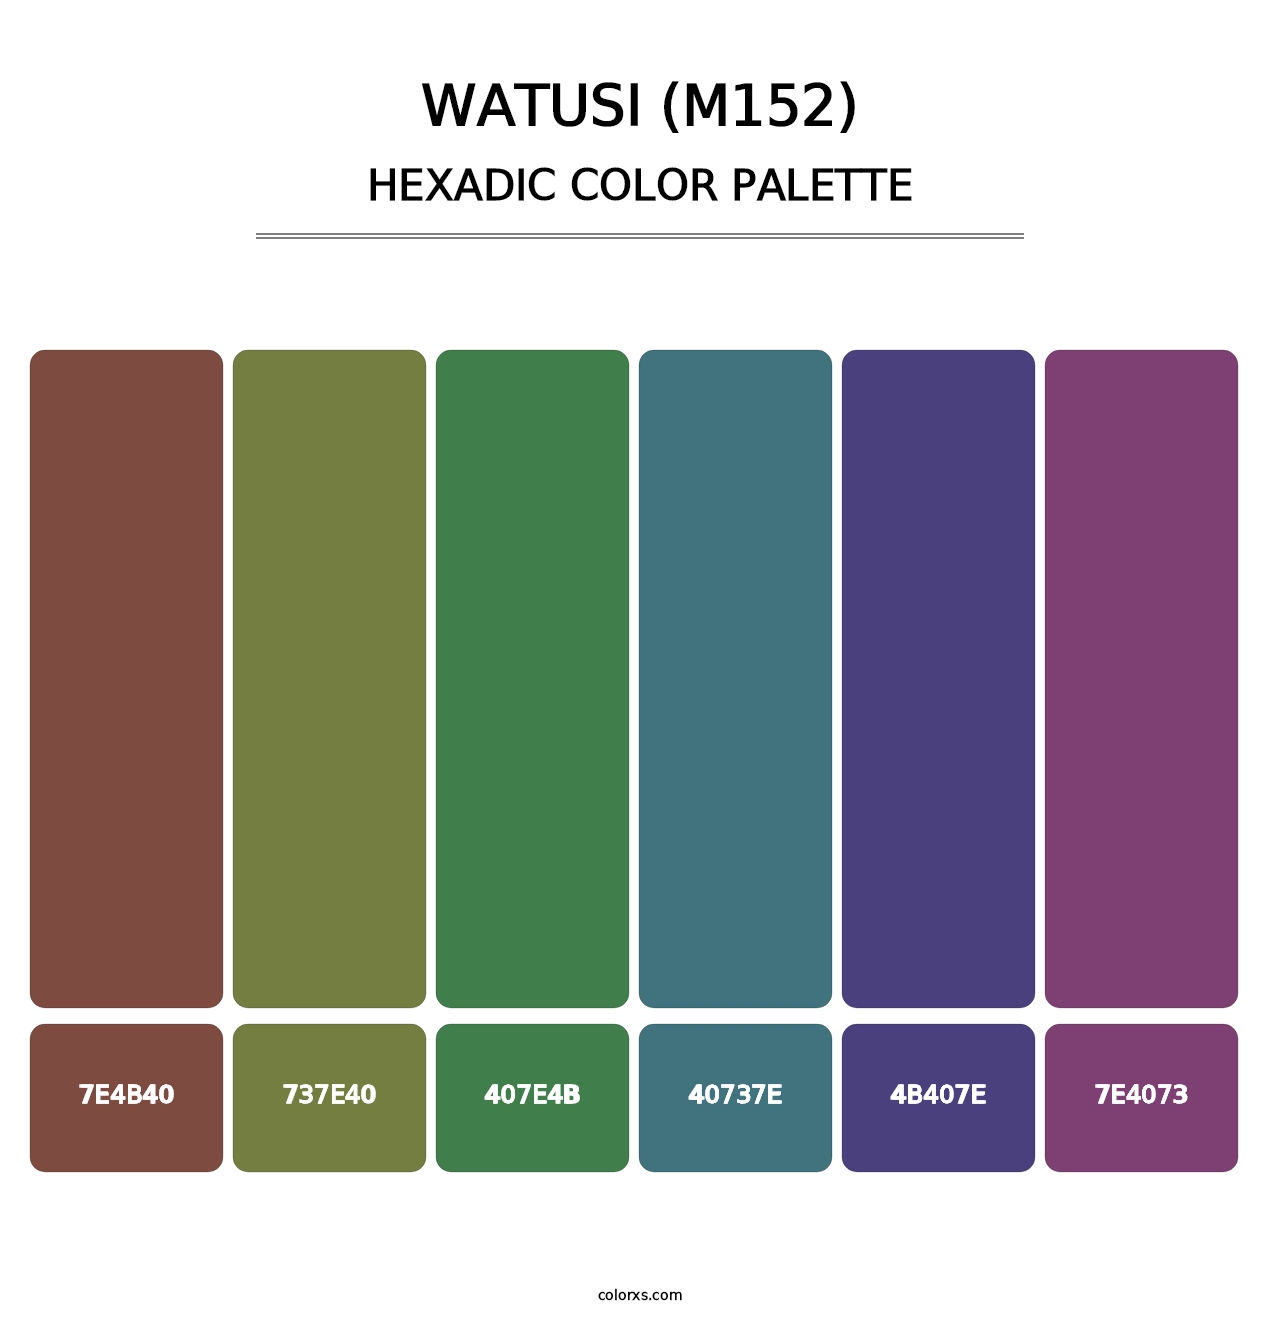 Watusi (M152) - Hexadic Color Palette